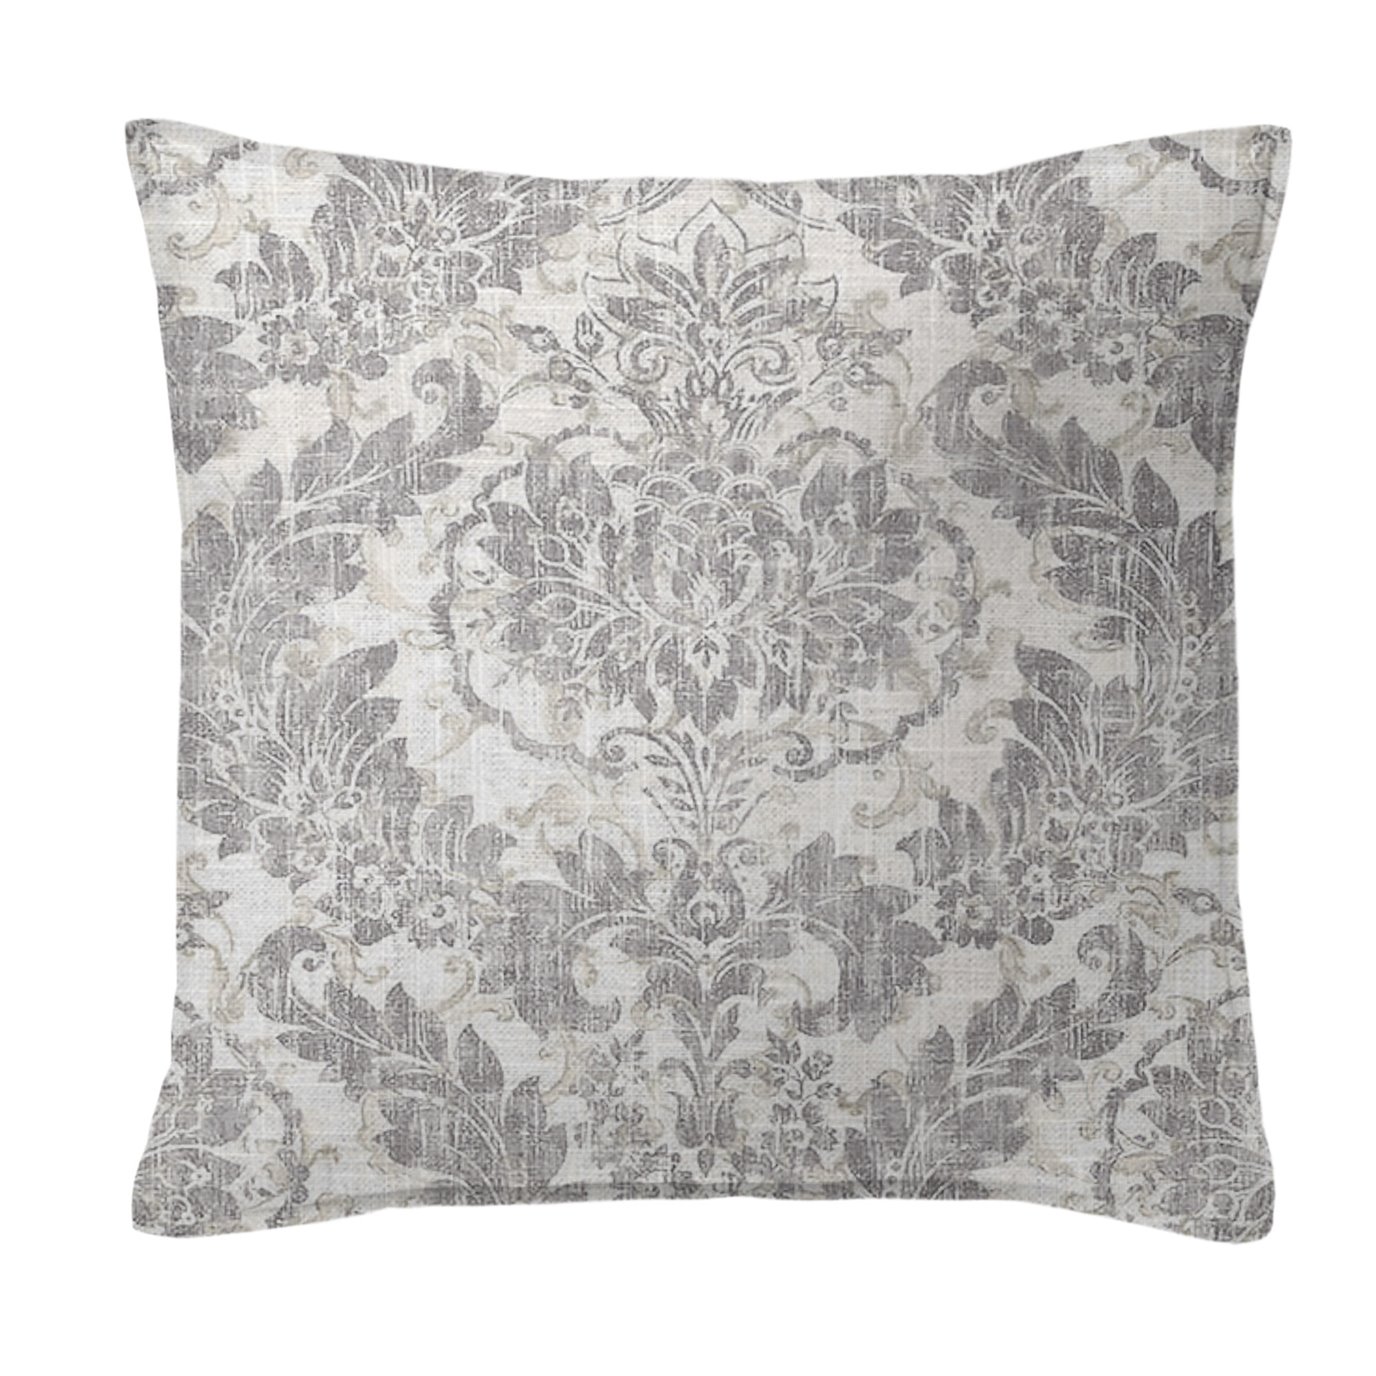 Damaskus Linen Graphite Decorative Pillow - Size 24" Square